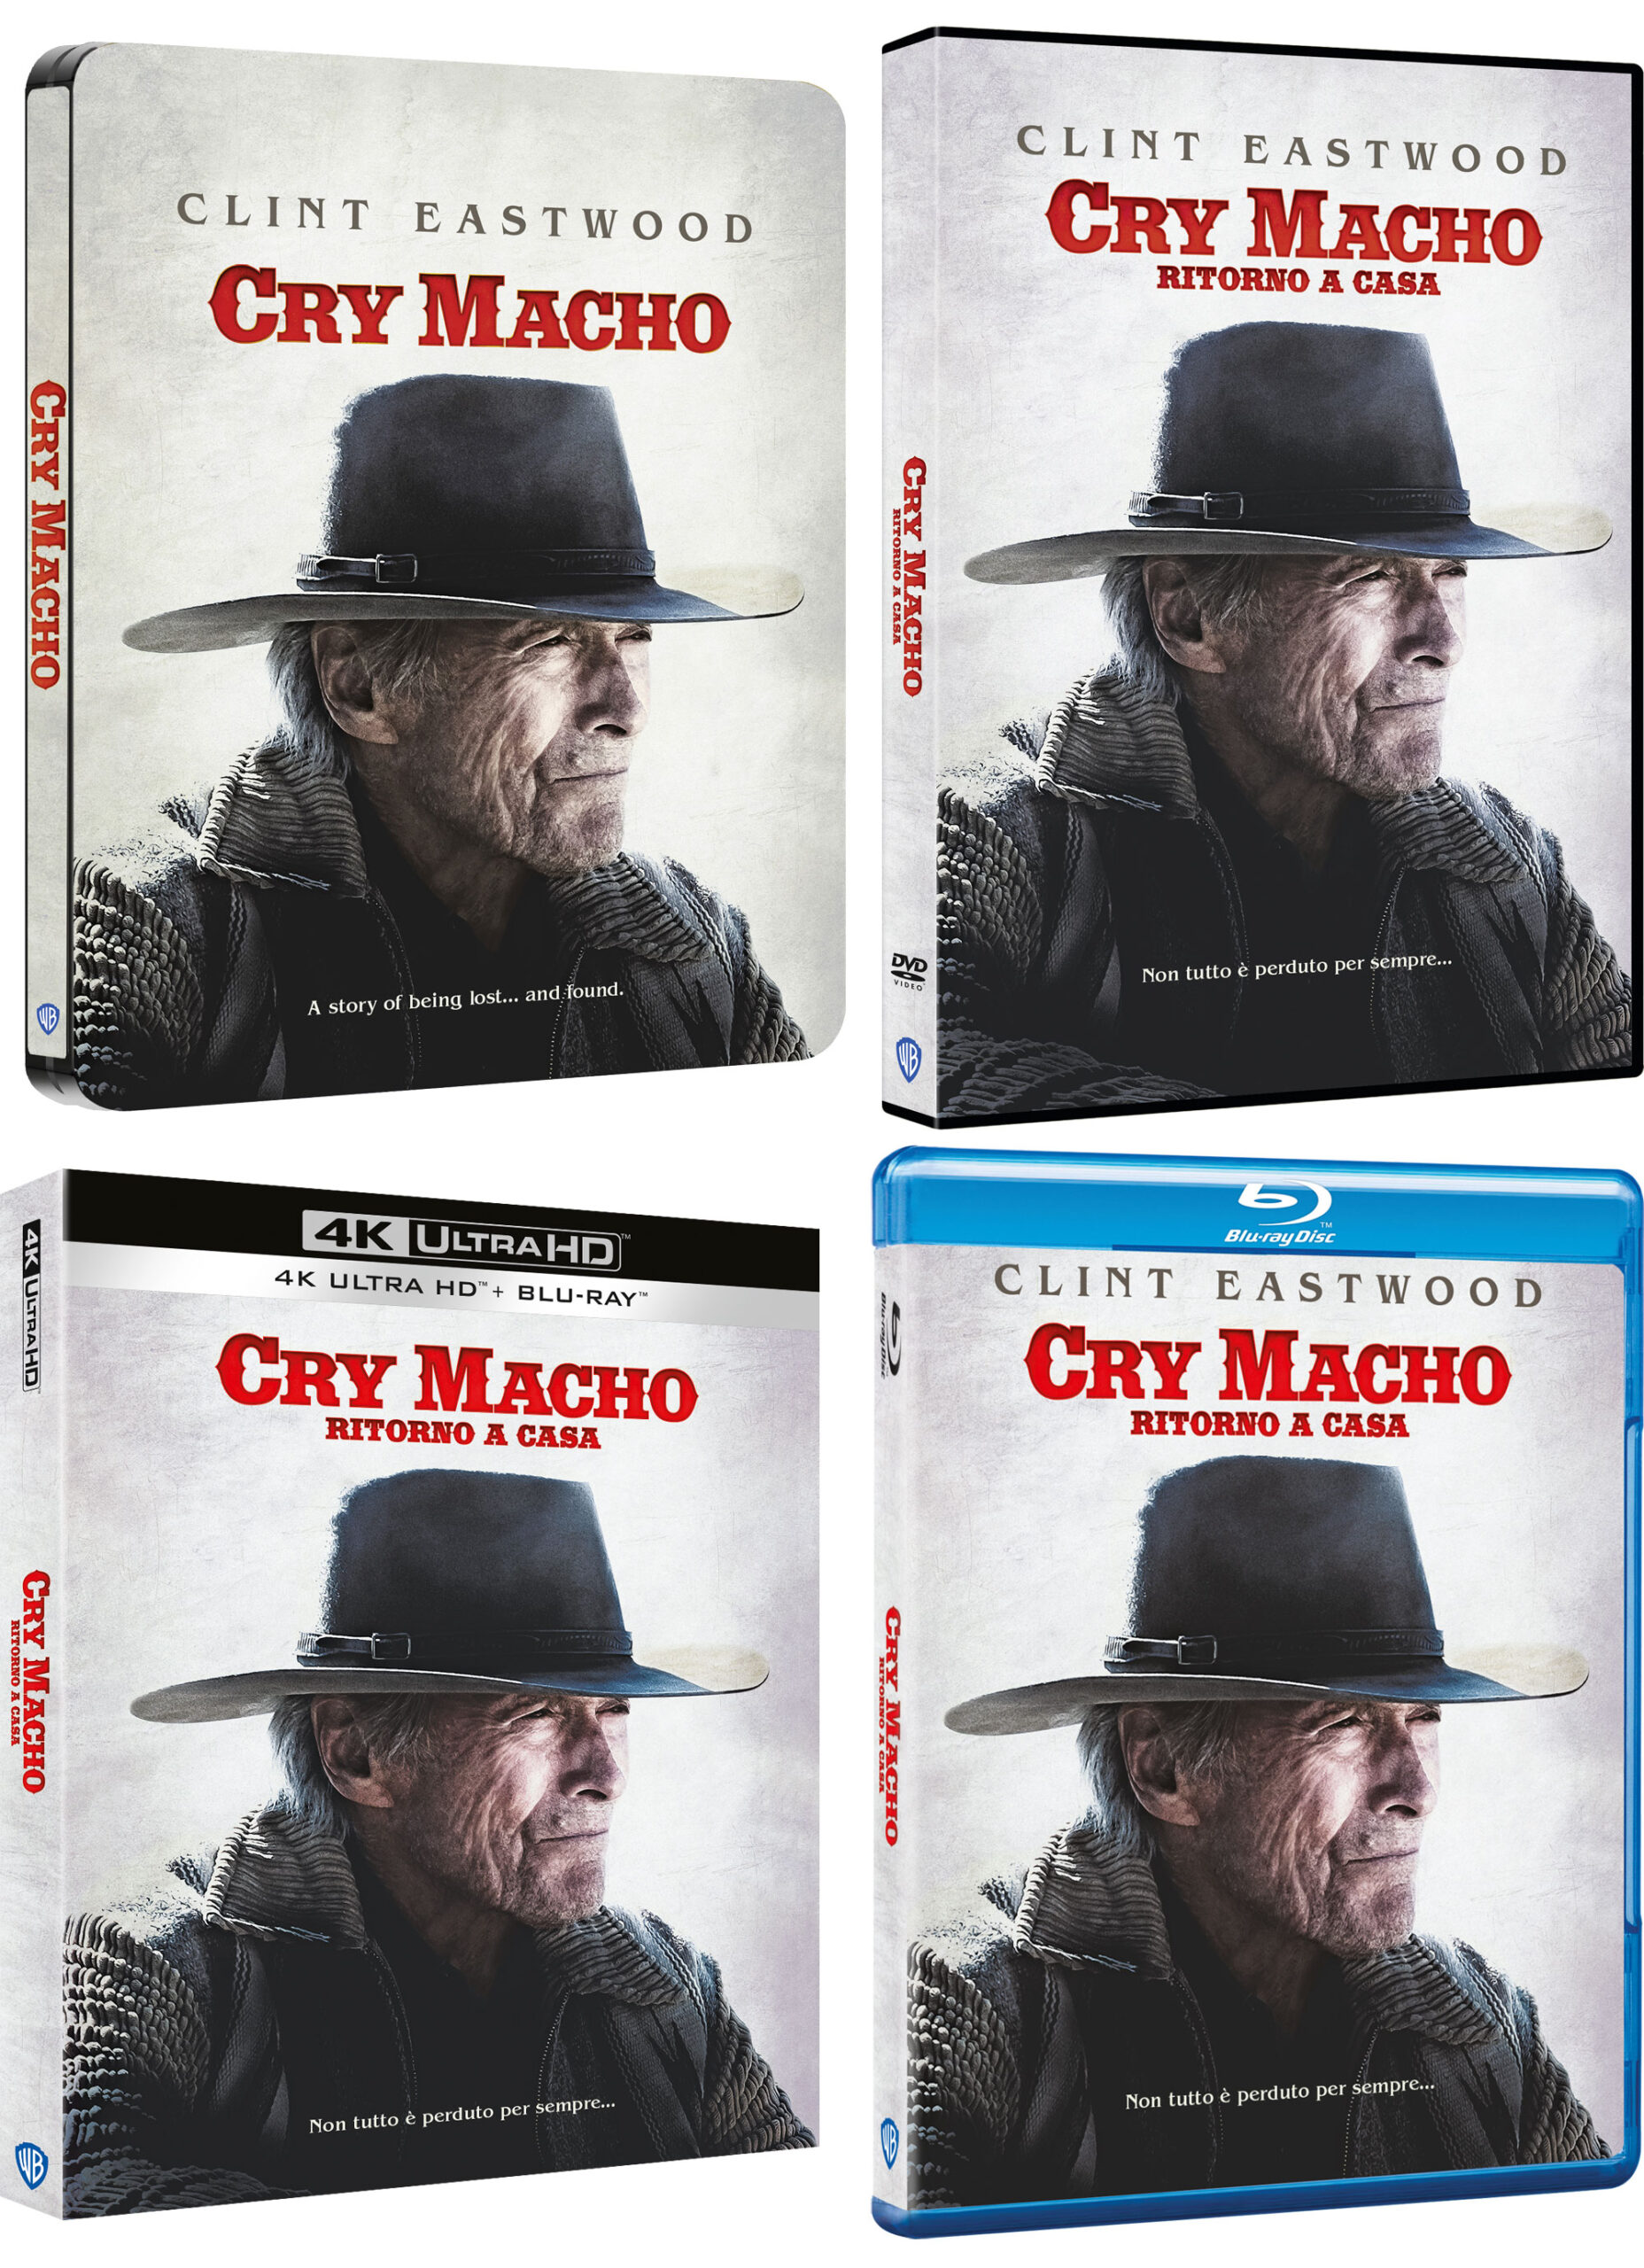 Cry Macho - Ritorno a casa in DVD, Blu-ray, 4K Ultra HD e Steelbook 4K Ultra HD